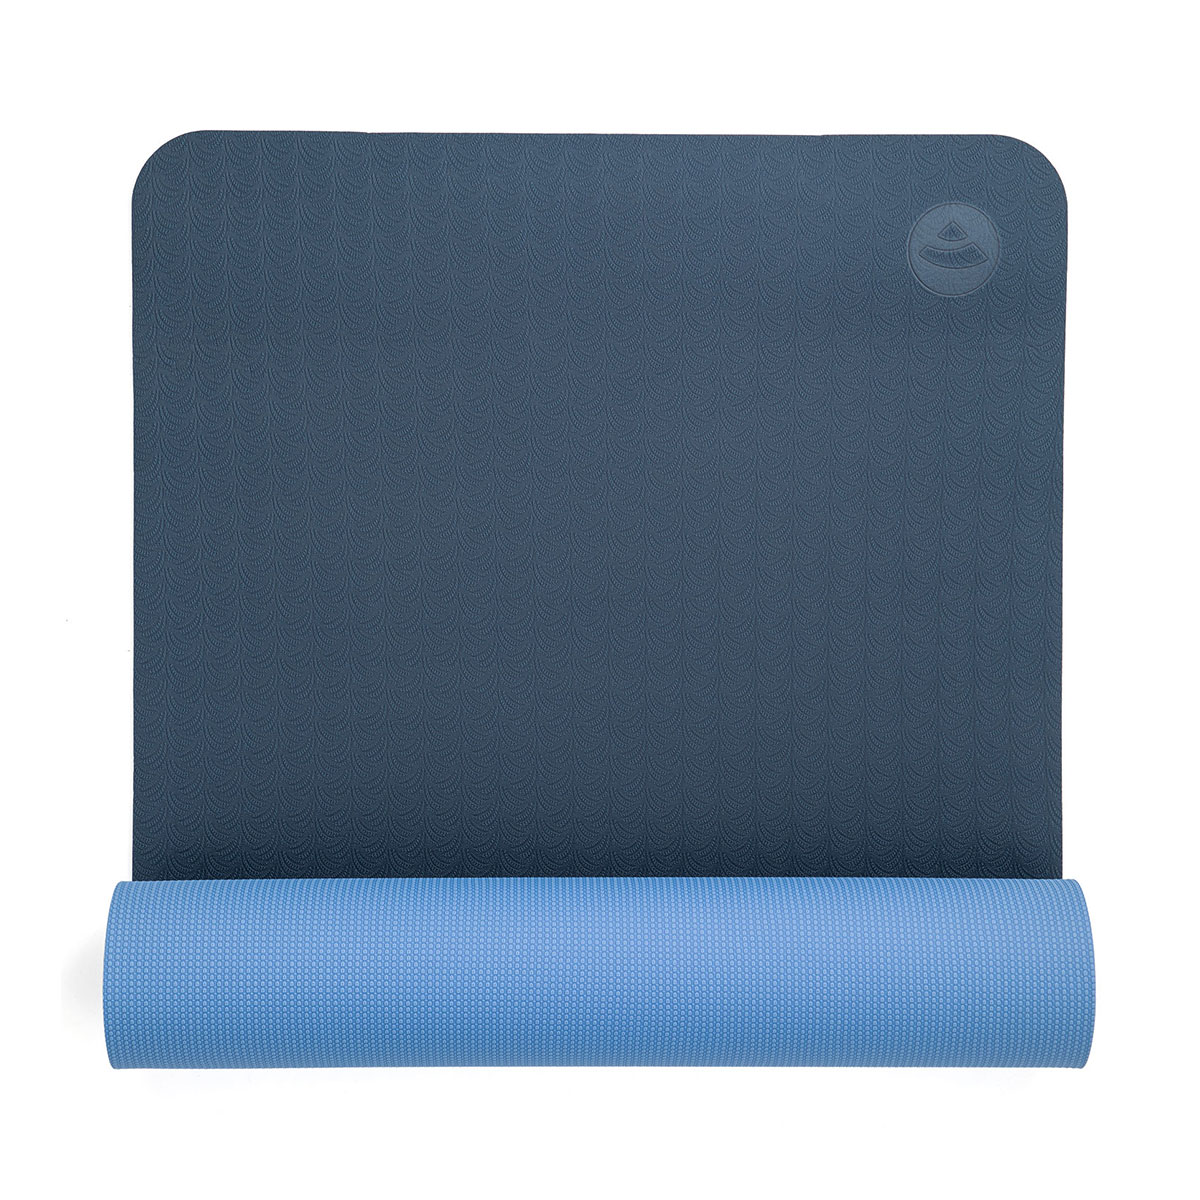  Yogamatte LOTUS PRO, blau/hellblau